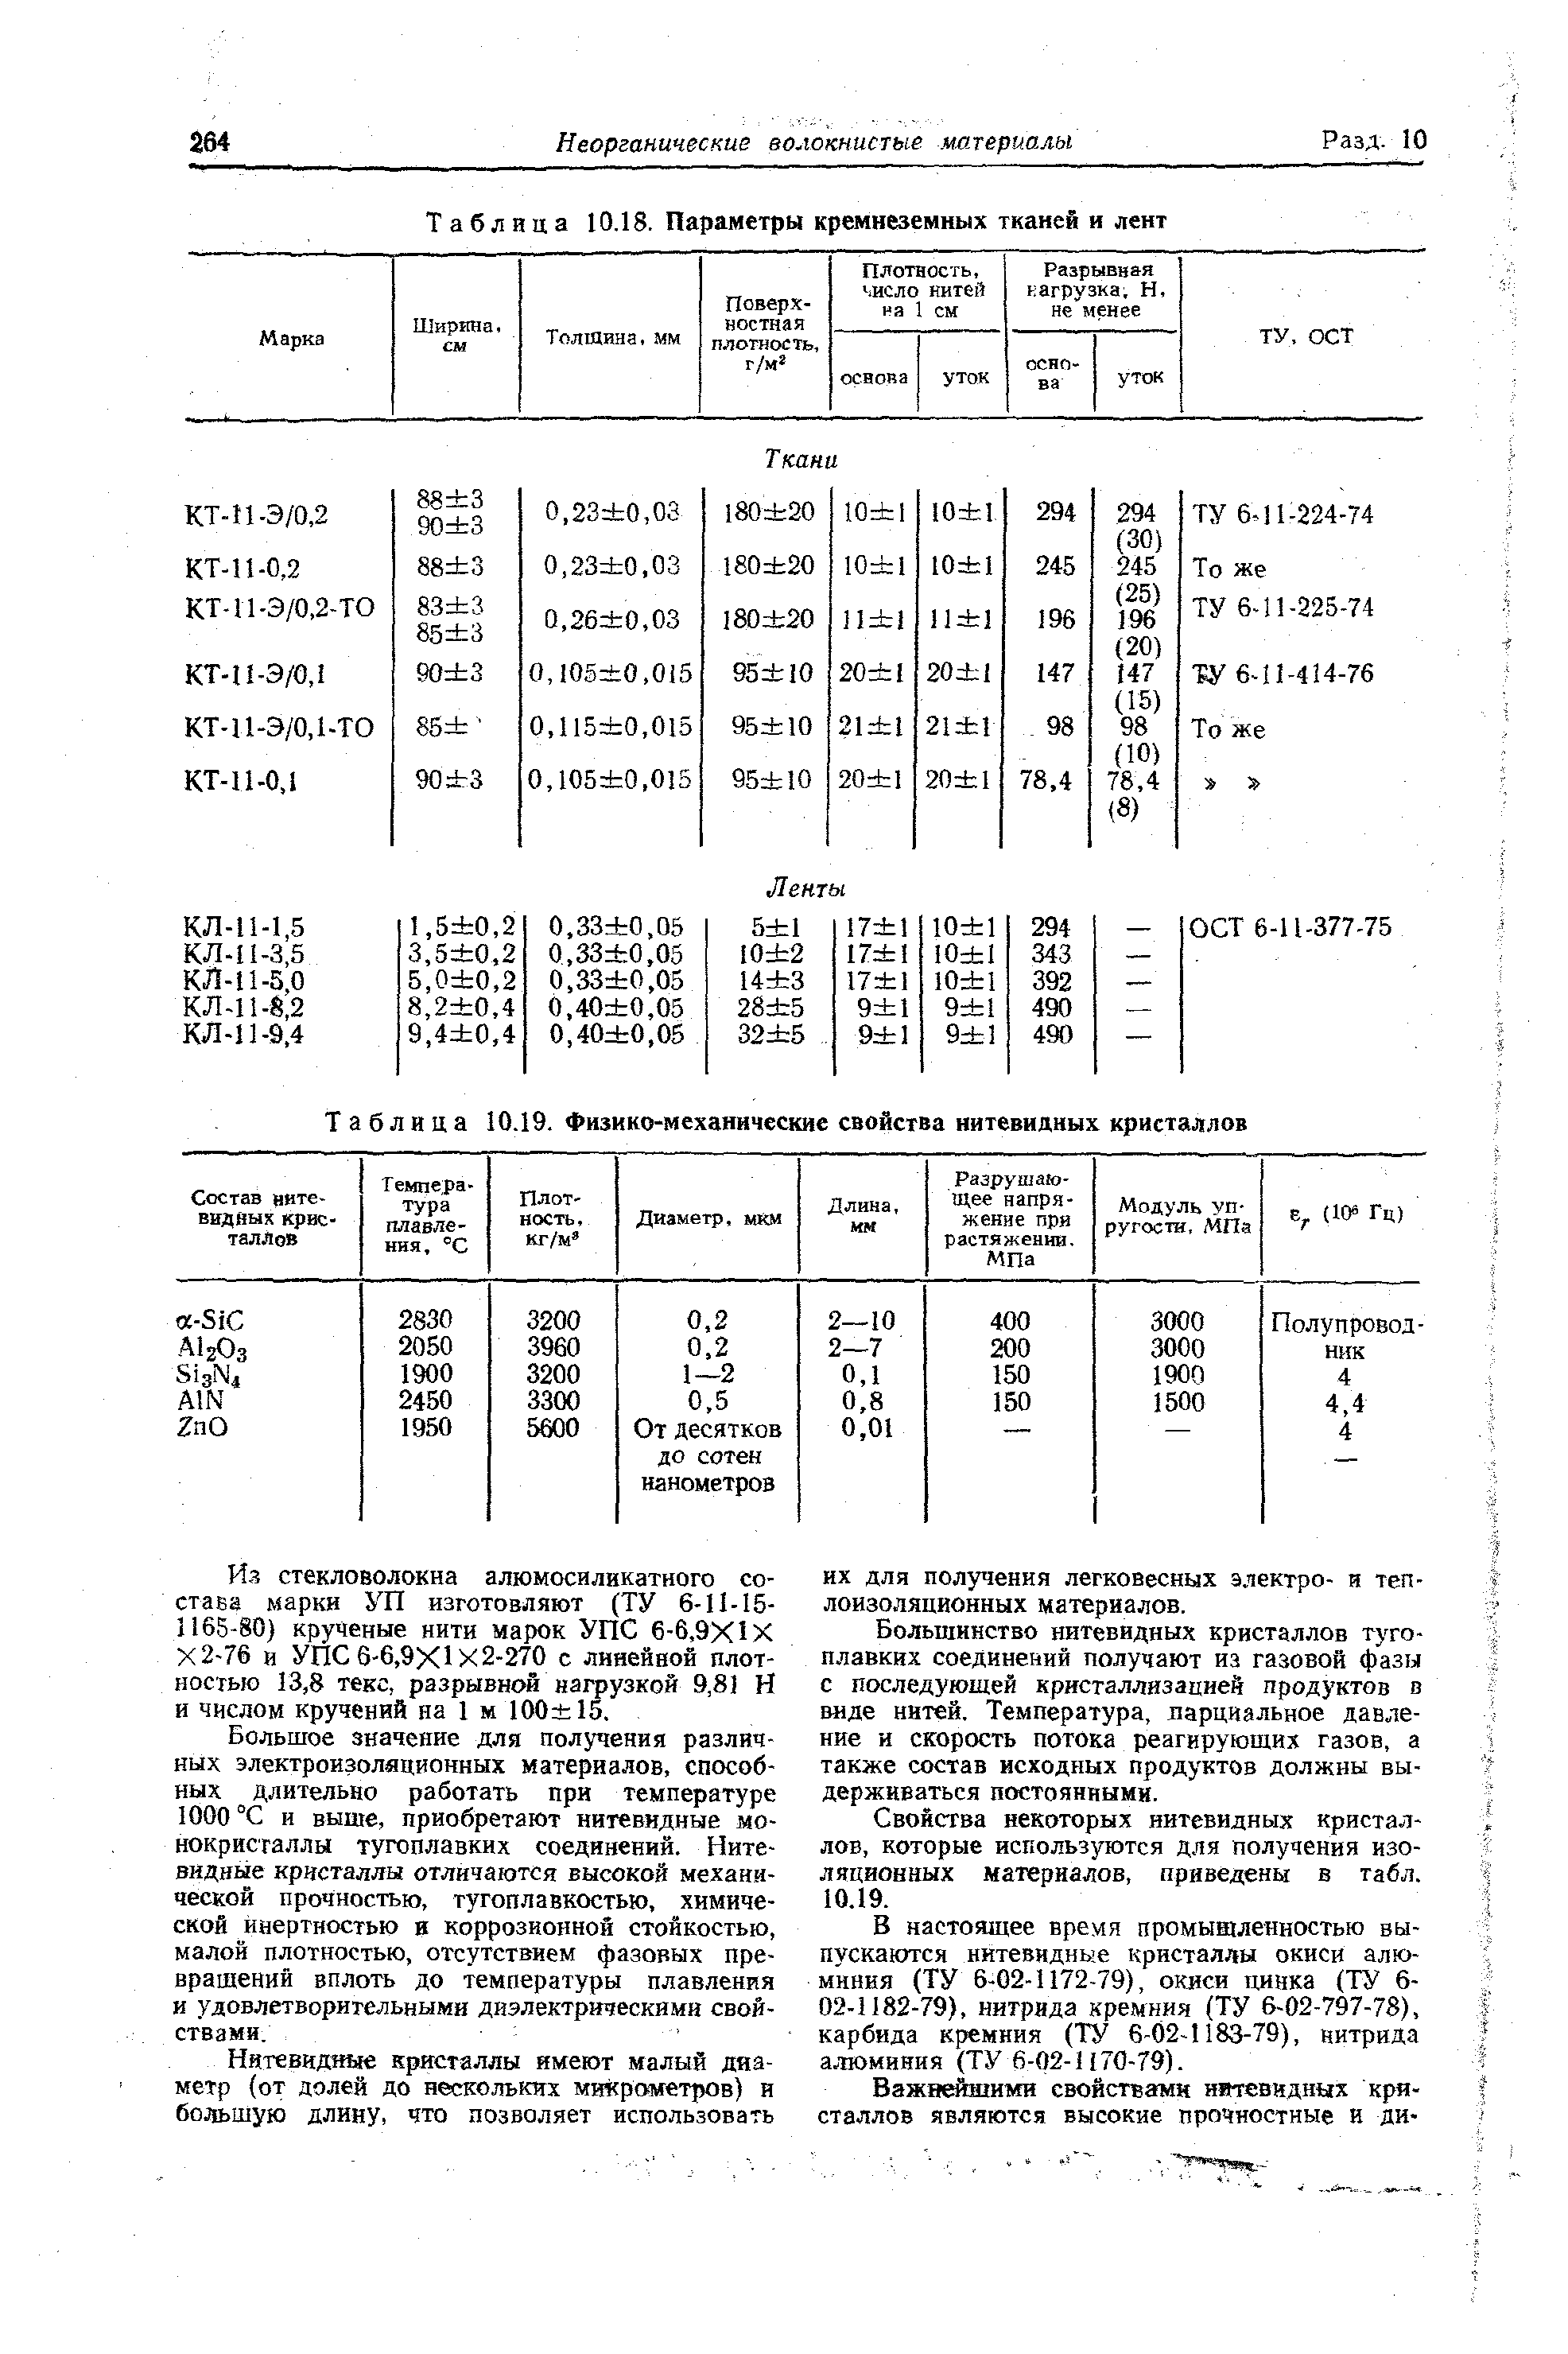 Таблица 10.19. Фнзико-механические свойства нитевидных кристаллов
